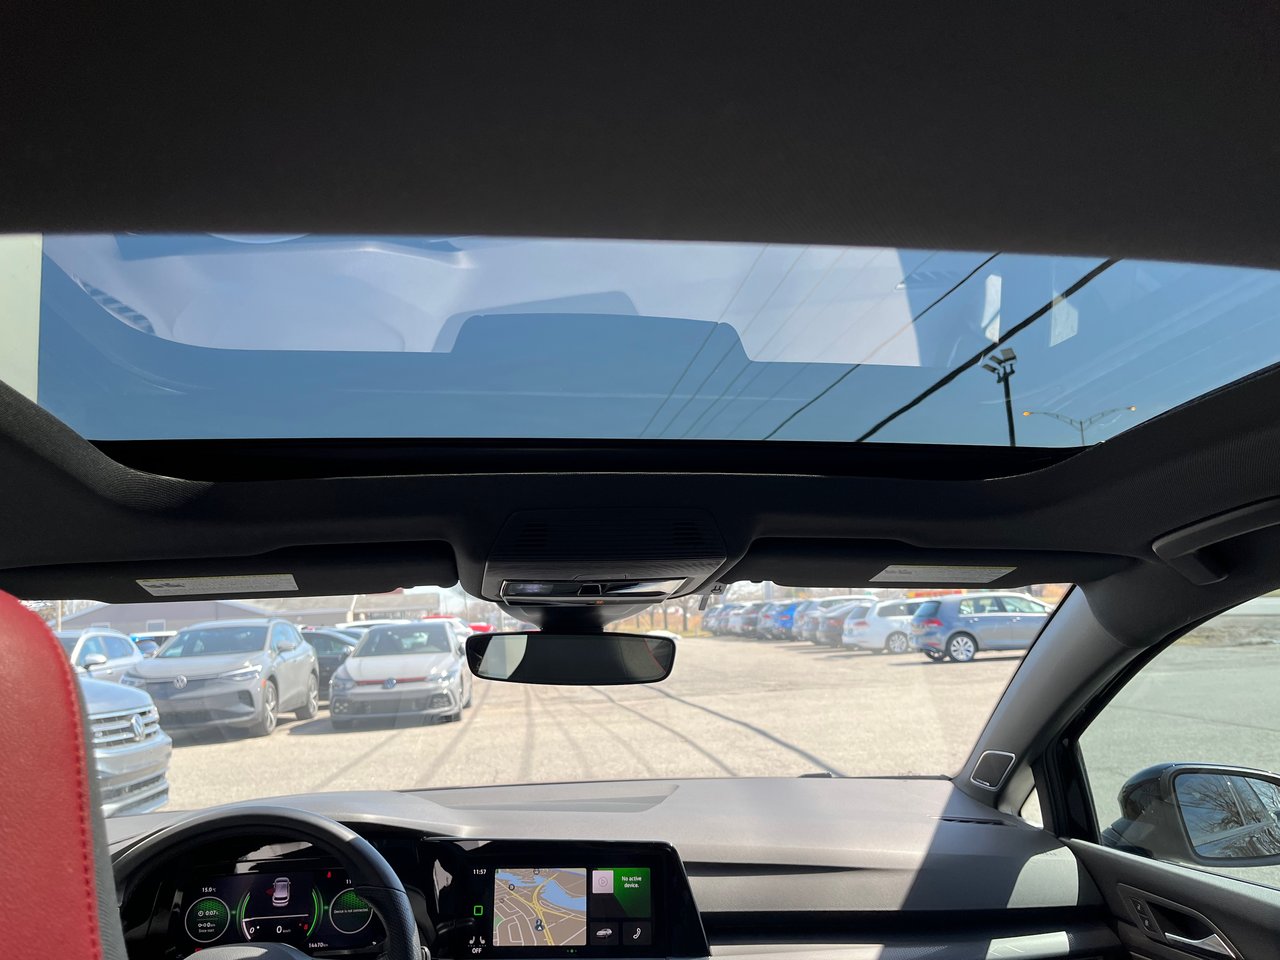 Volkswagen Golf GTI Autobahn+manuelle+bas milage+caméra de recul+ 2022